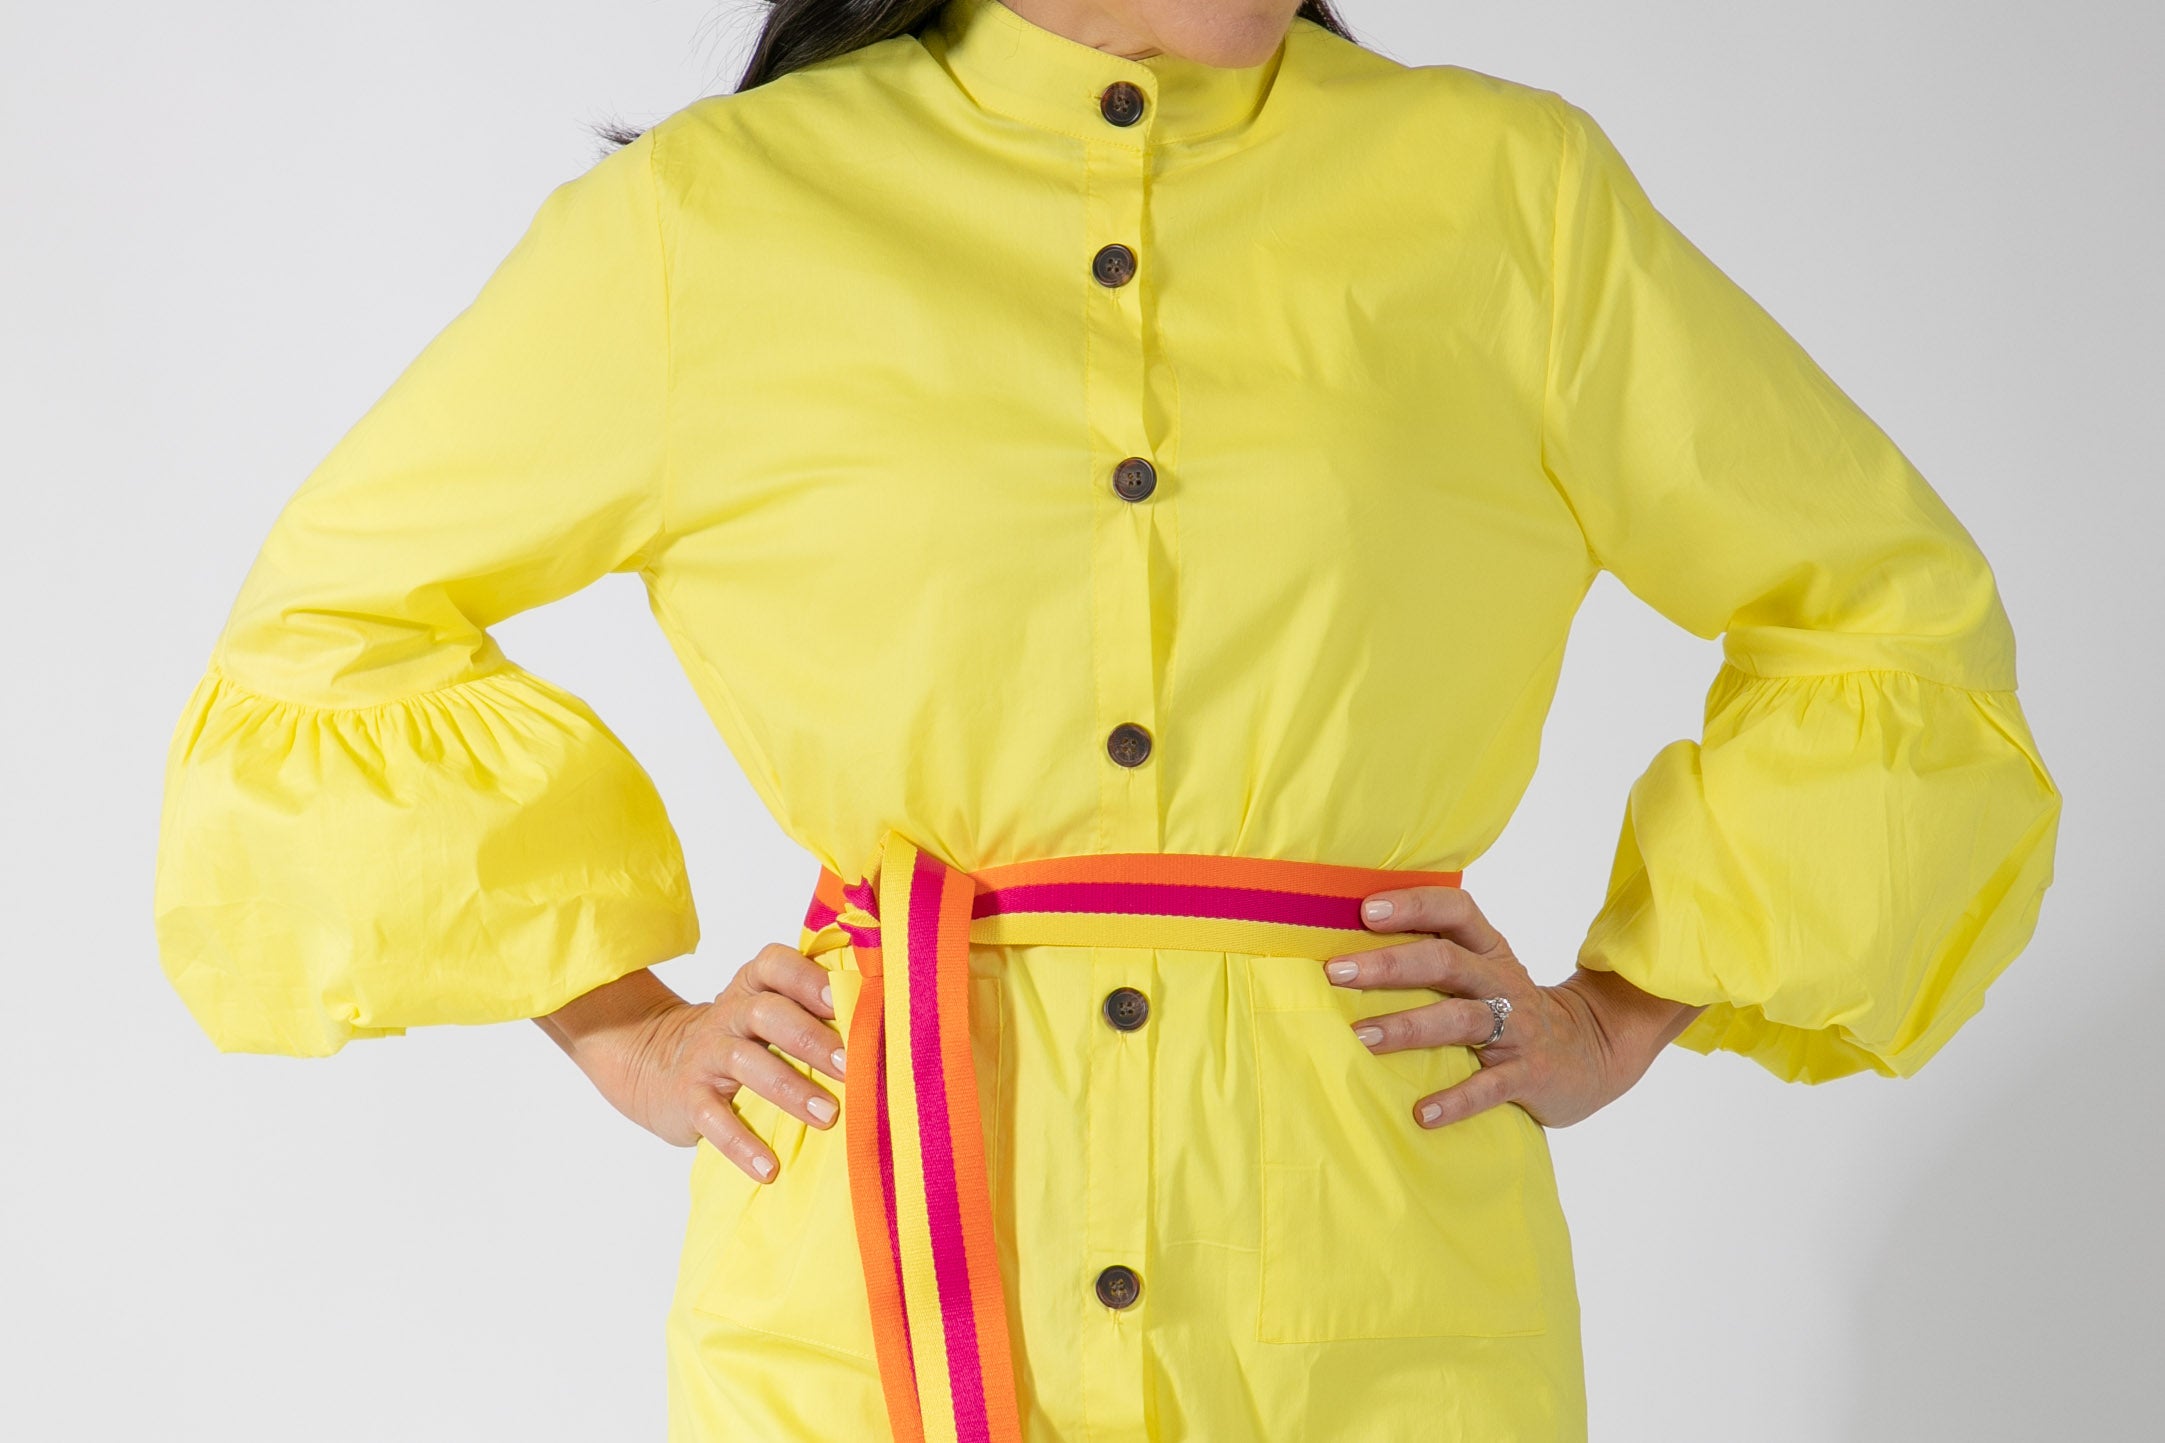 Yellow Fashion Dress